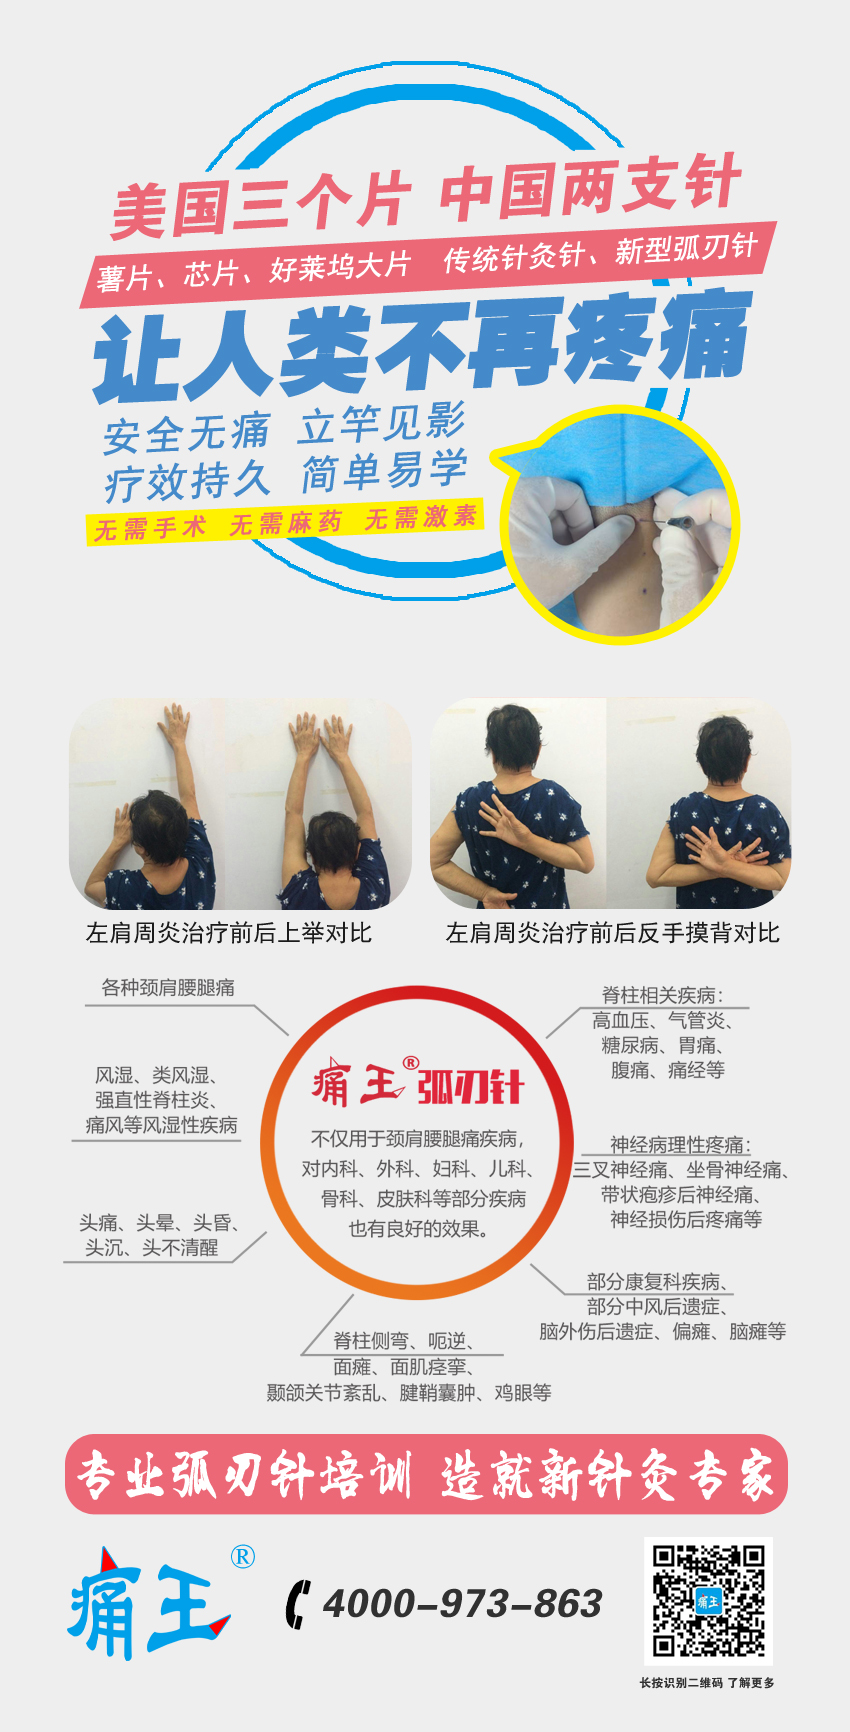 中国新针灸——弧刃针专题班